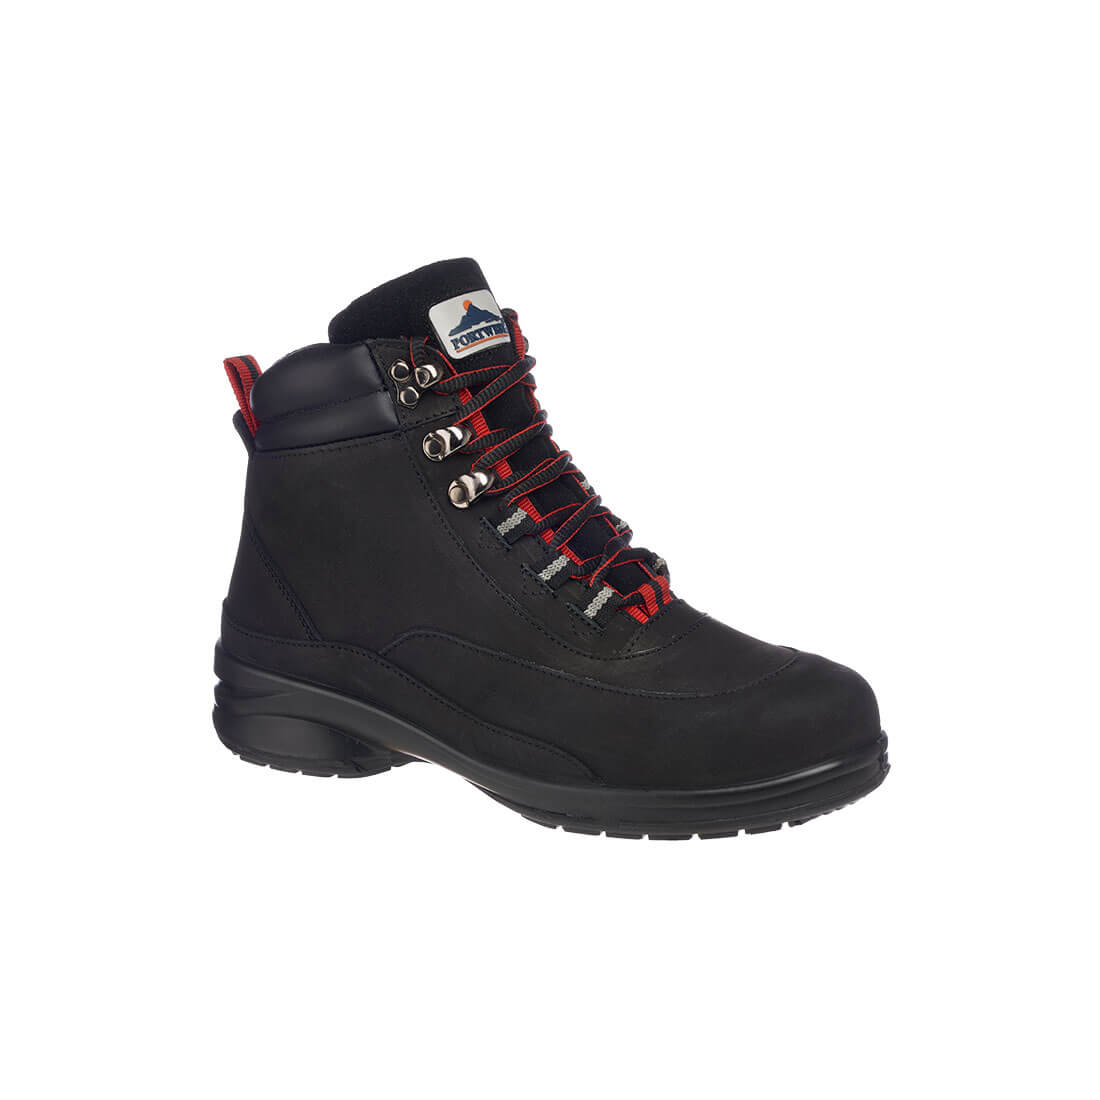 Steelite Women's Hiker Boot - Black